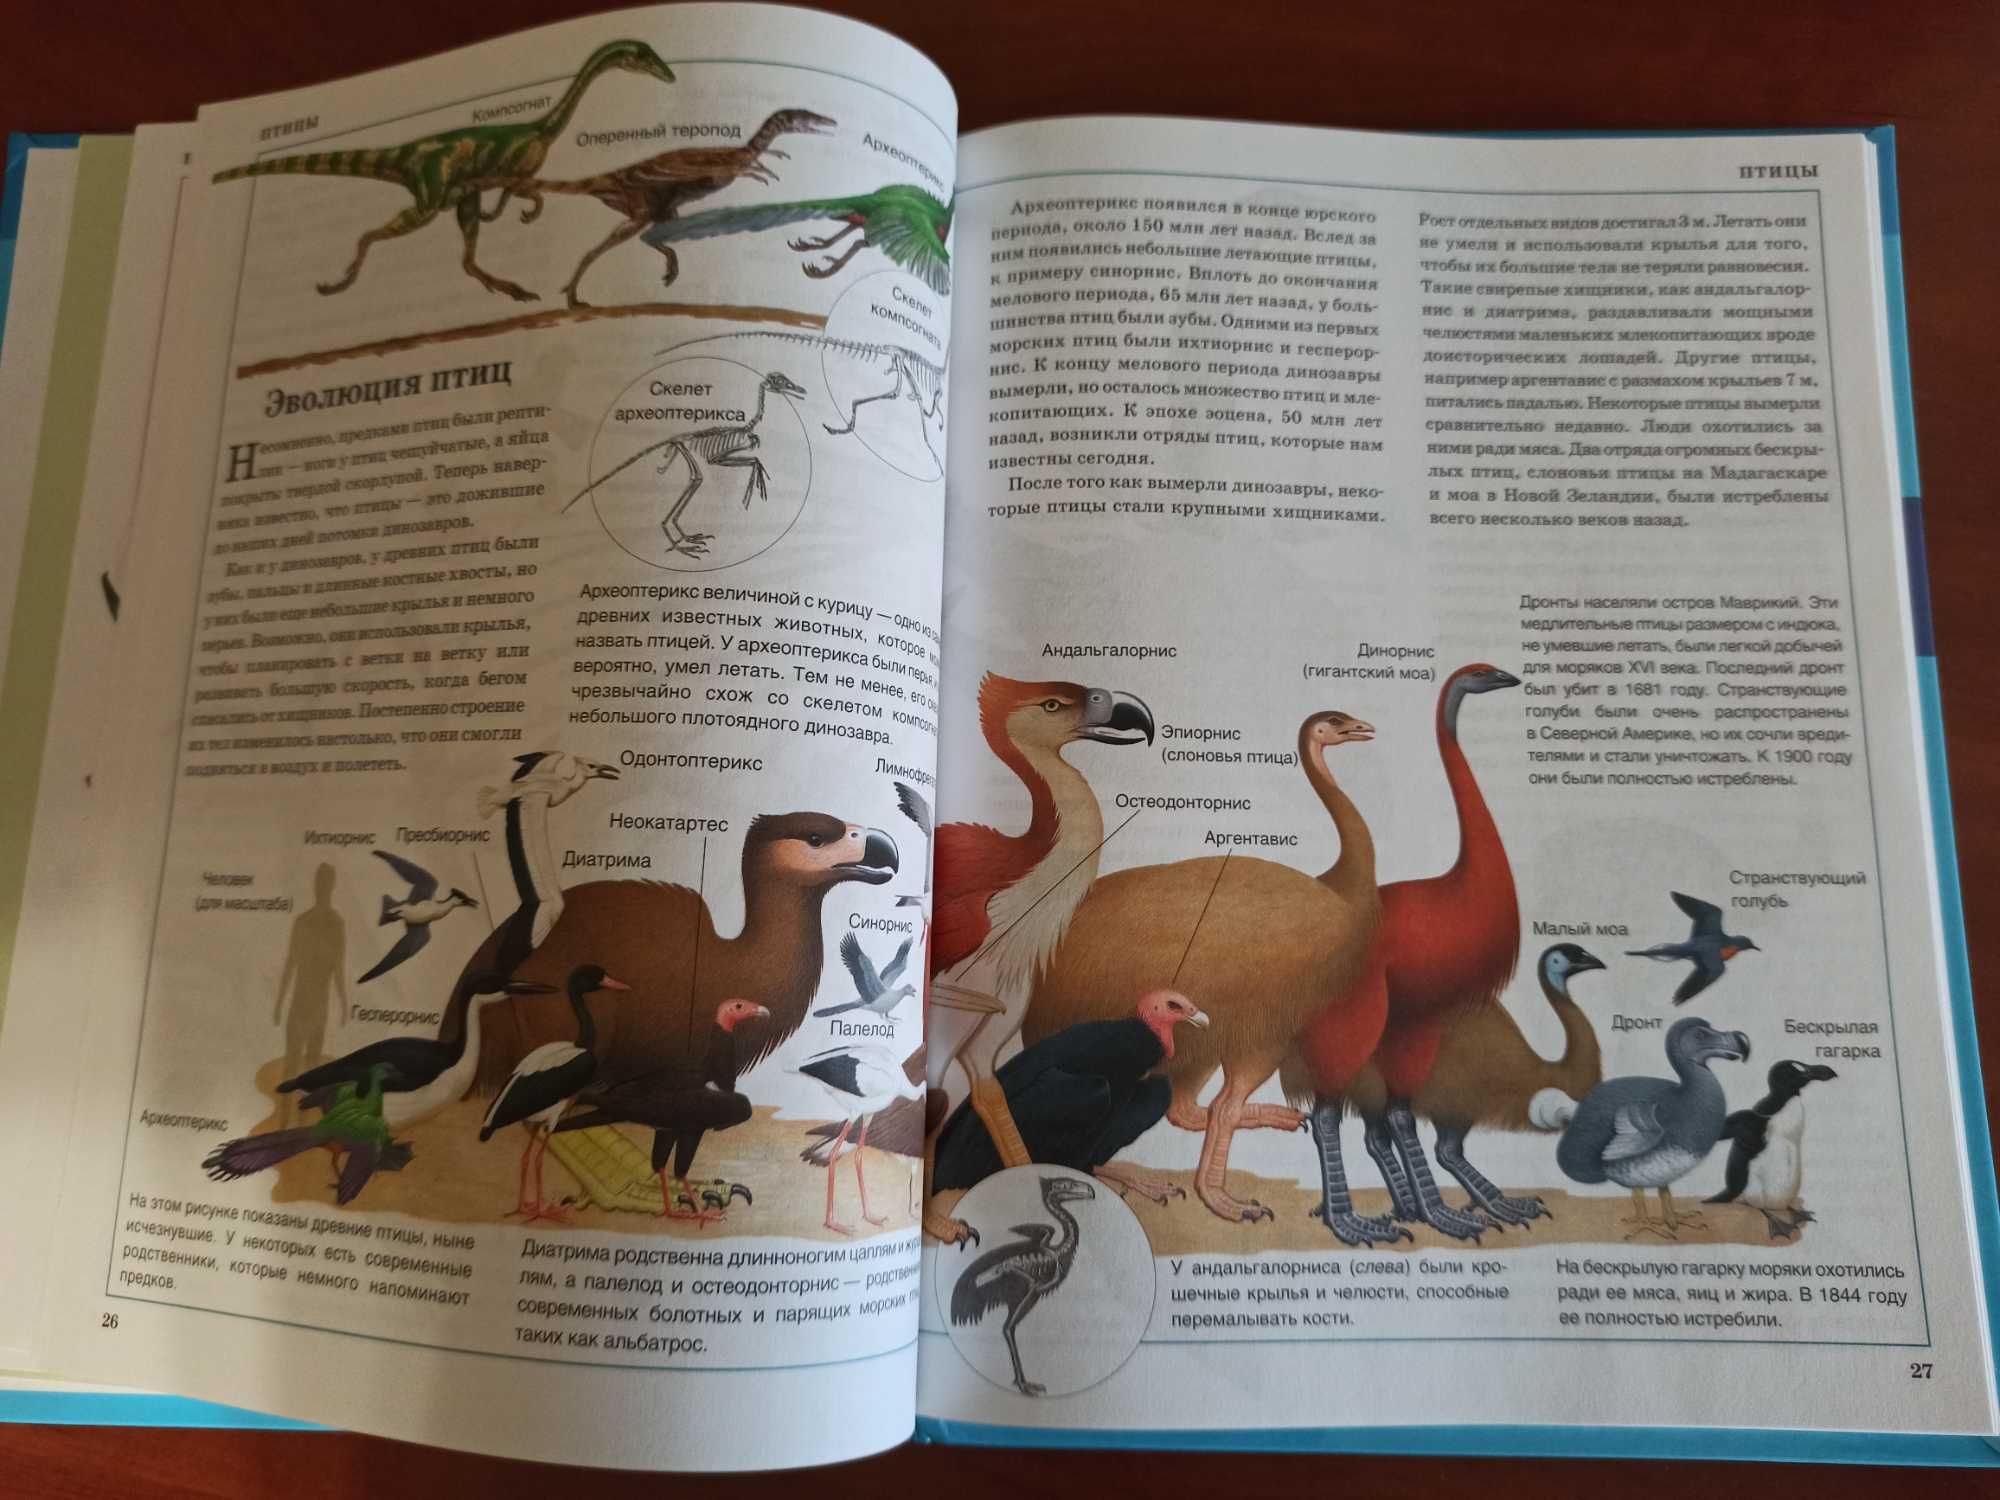 Энциклопедия для детей Животные